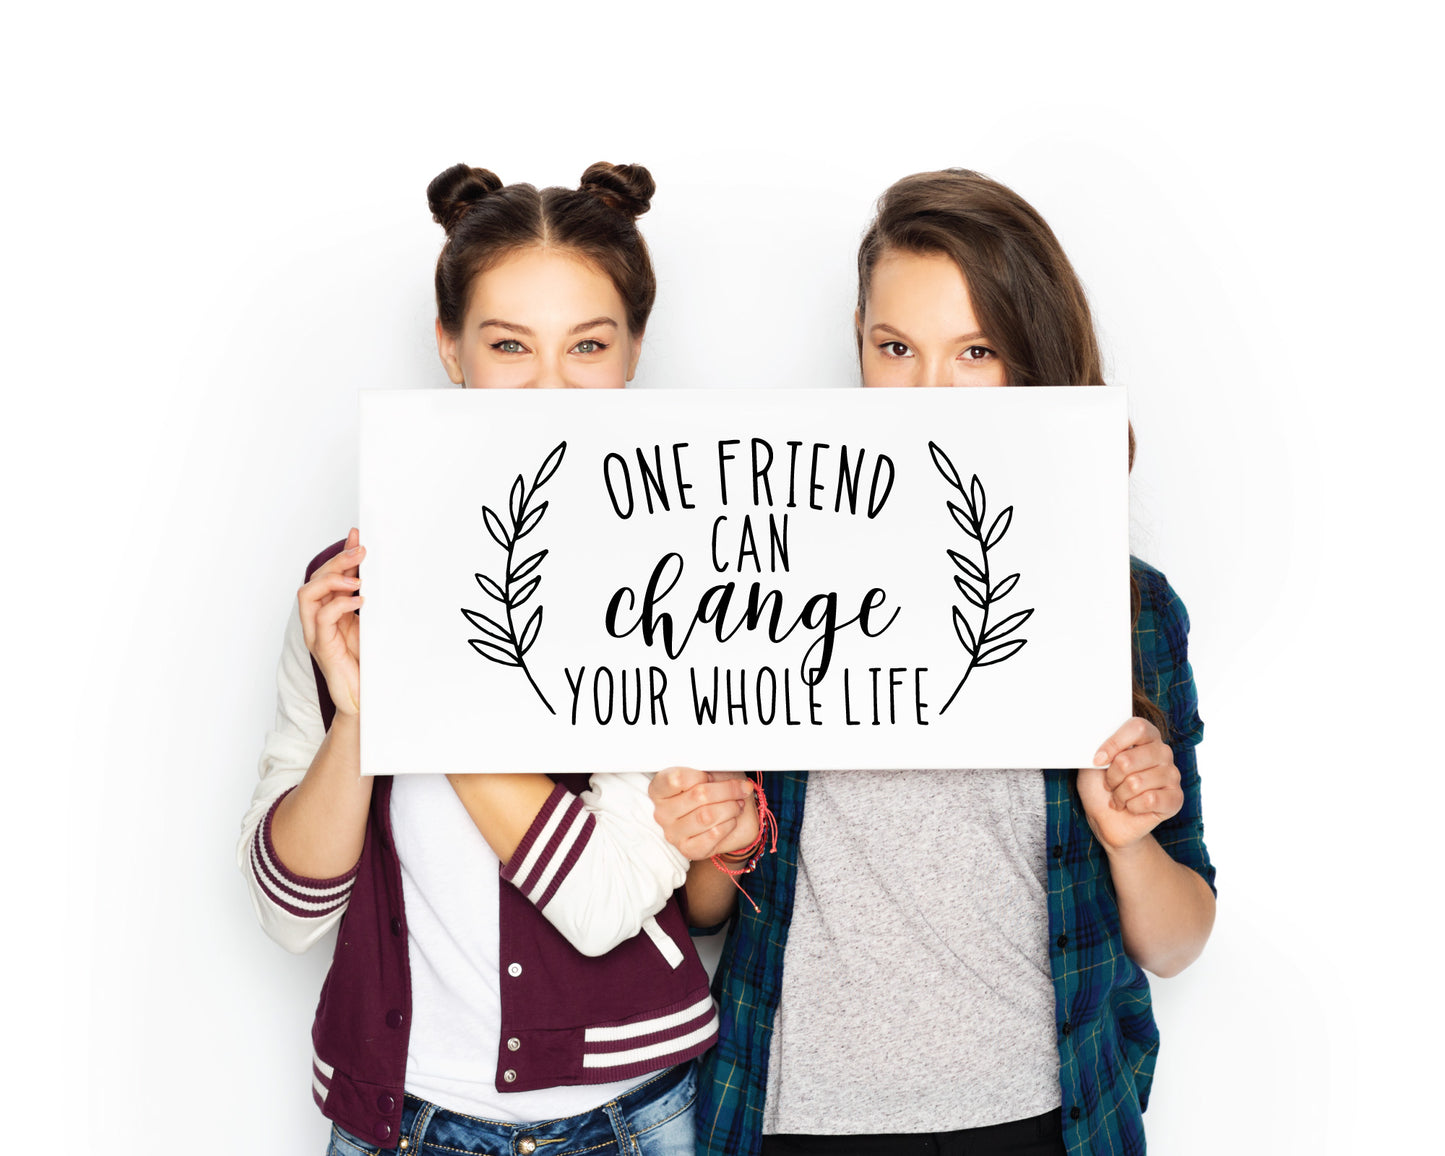 Friendship Quote SVG Bundle